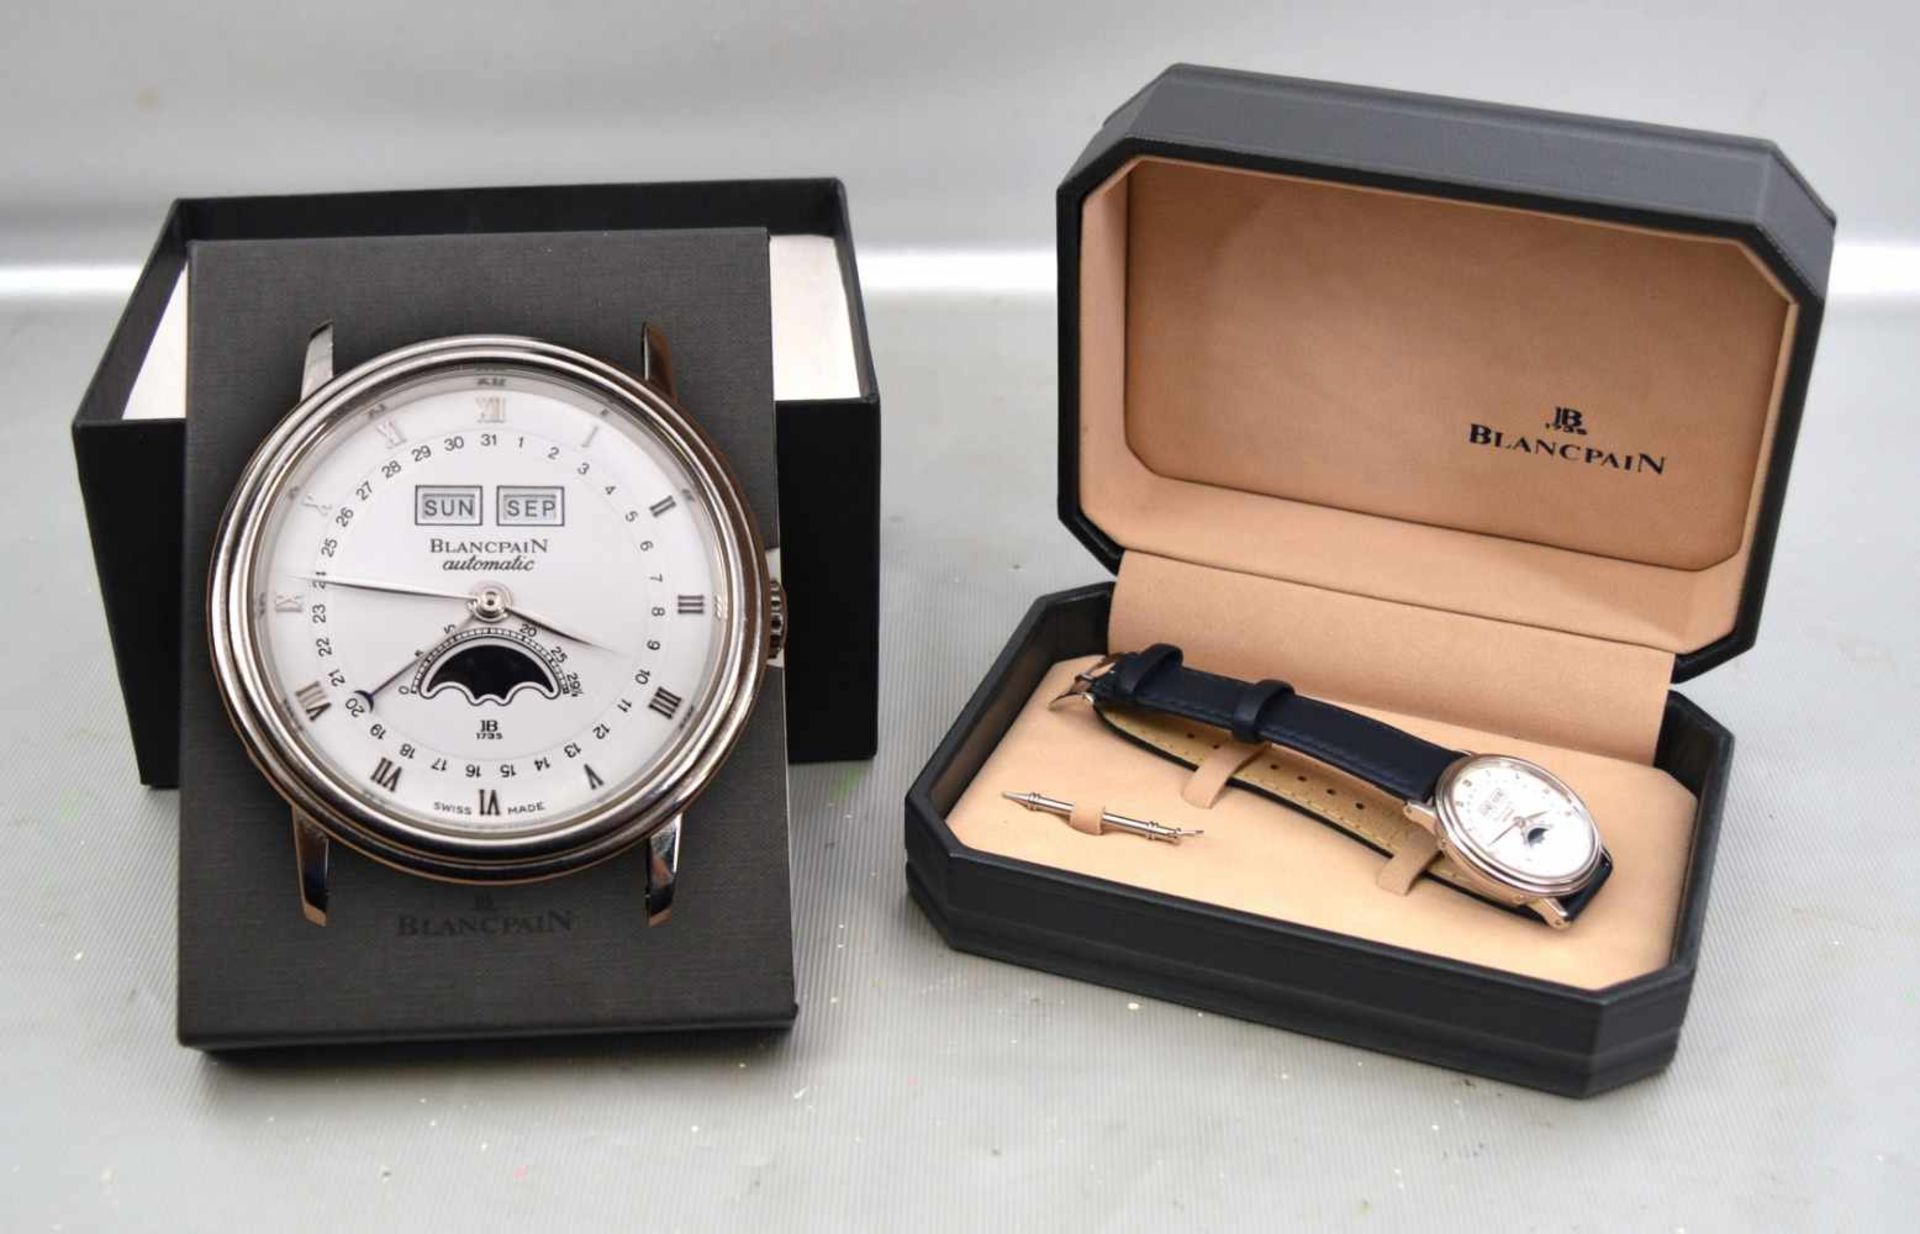 Armbanduhr "Villeret" Stahlgehäuse, Unisex, Automatik, weißes Zifferblatt, mit Mondphase und